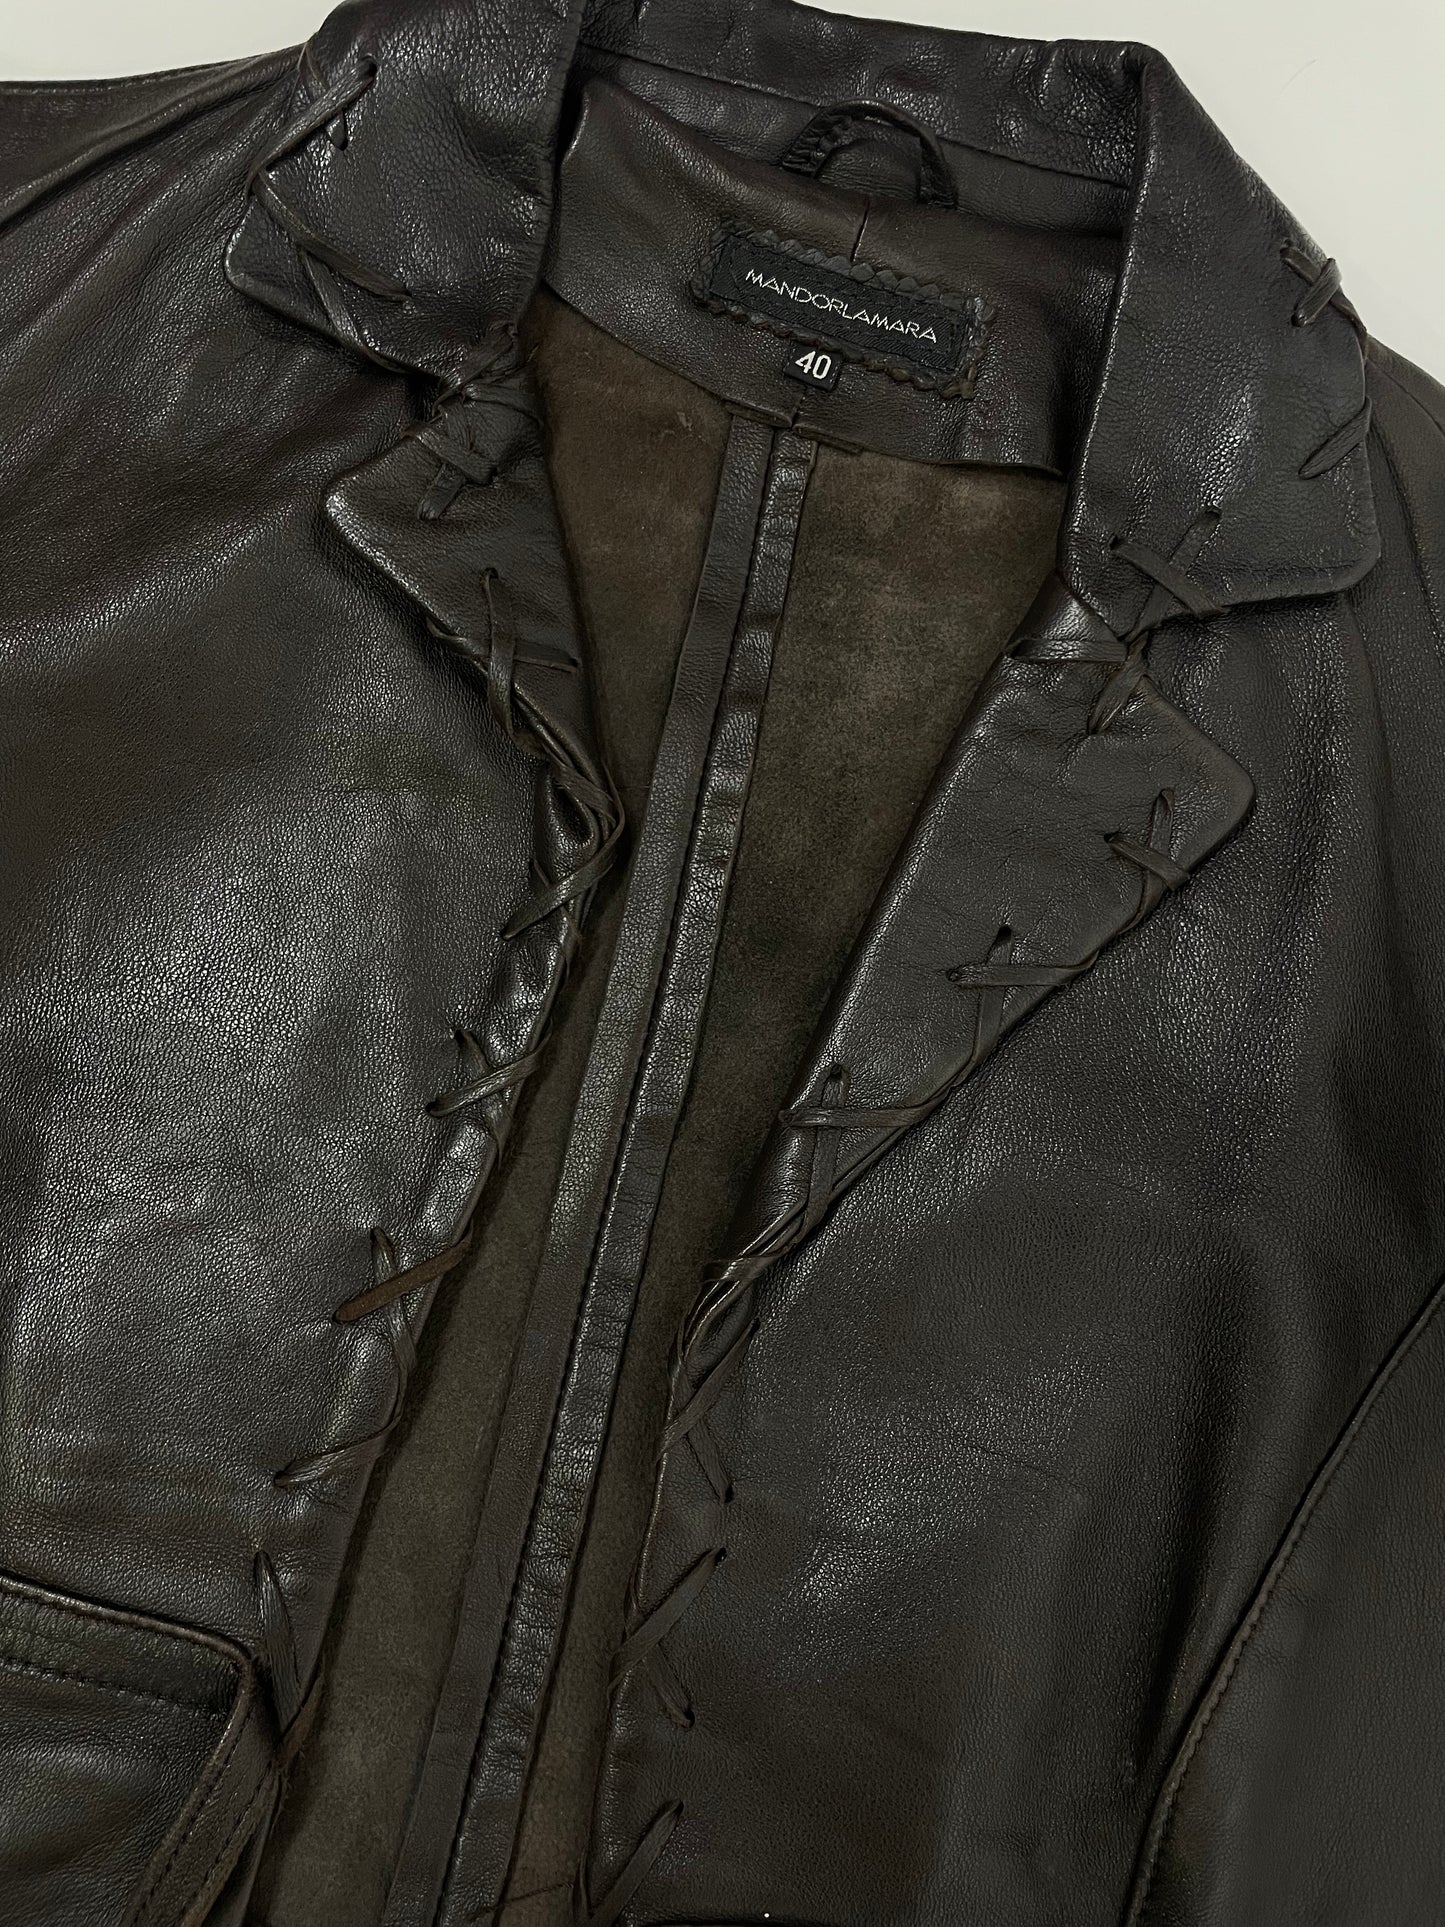 leather-jacket-lavorazione-artigiana